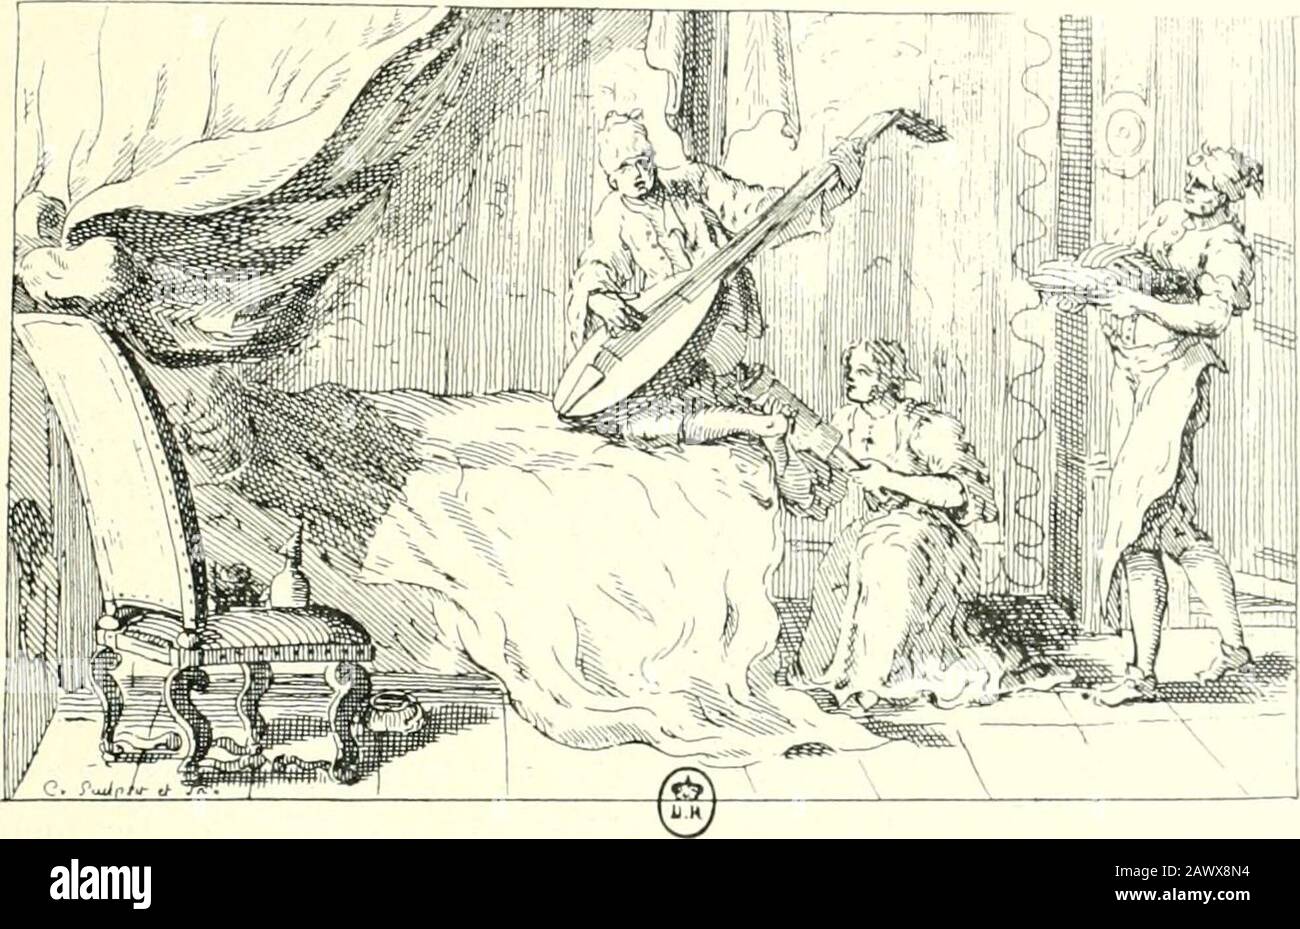 L'estampe satirique et la caricature en France au 18e siècle; préfde Maurice Tourneux . Marlboiougti, né le 2i juin 10^0, mort le 20 juillet 1722, ressuscitant aux échosdela chanson devenue de mode en 1782, se plaint quon insulte à sa mémoire. 2. Caricature de 1730 : Cabinet des Estampes, coll. Hennin, t. XCVI. ,l. Cf. Ln Musique baroque introduite en France par les chats italiens, 1749, cari-cature à propos de riiilluence de ta musique italienne eu France Kibl. de lArse-nal, t. CCWll-CCLVIIj. ET LA CARICATURK l-N lIlANGK 69 une autre gravure, il est assis écrivant à une table, lorsquun démons Stock Photo